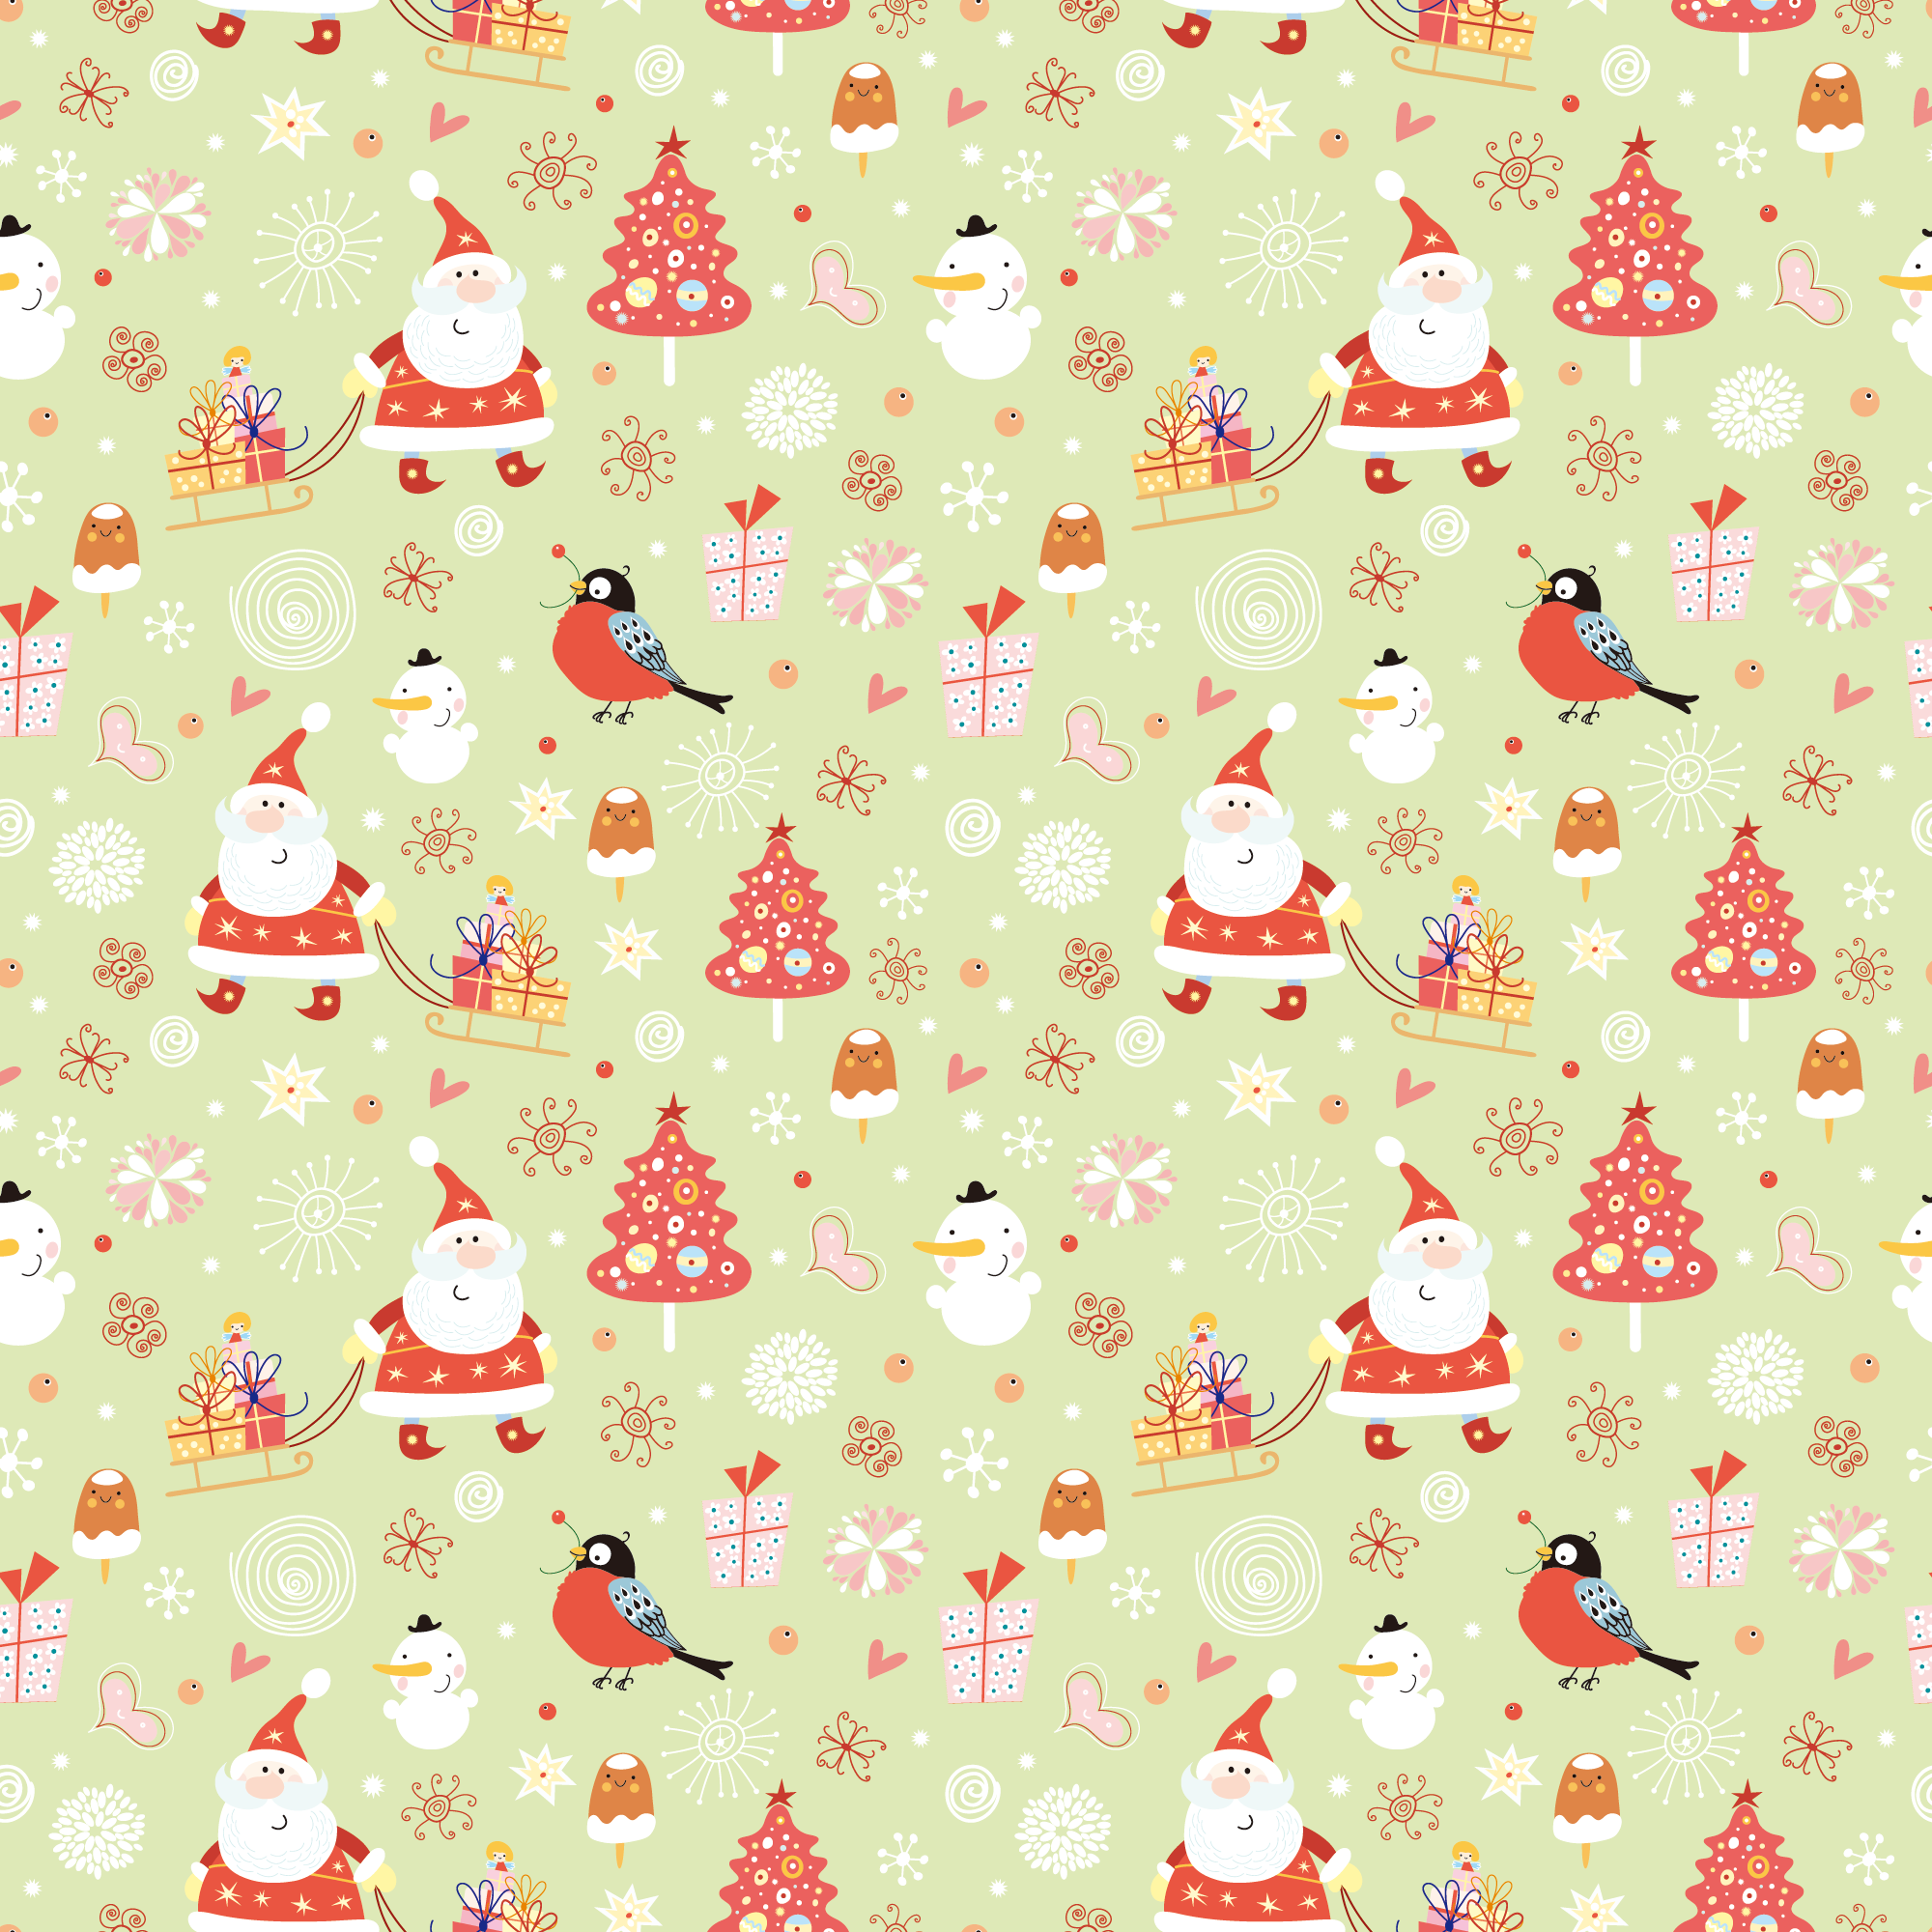 クリスマスのイラストno 219 壁紙 ポップパターン 無料のフリー素材集 花鳥風月